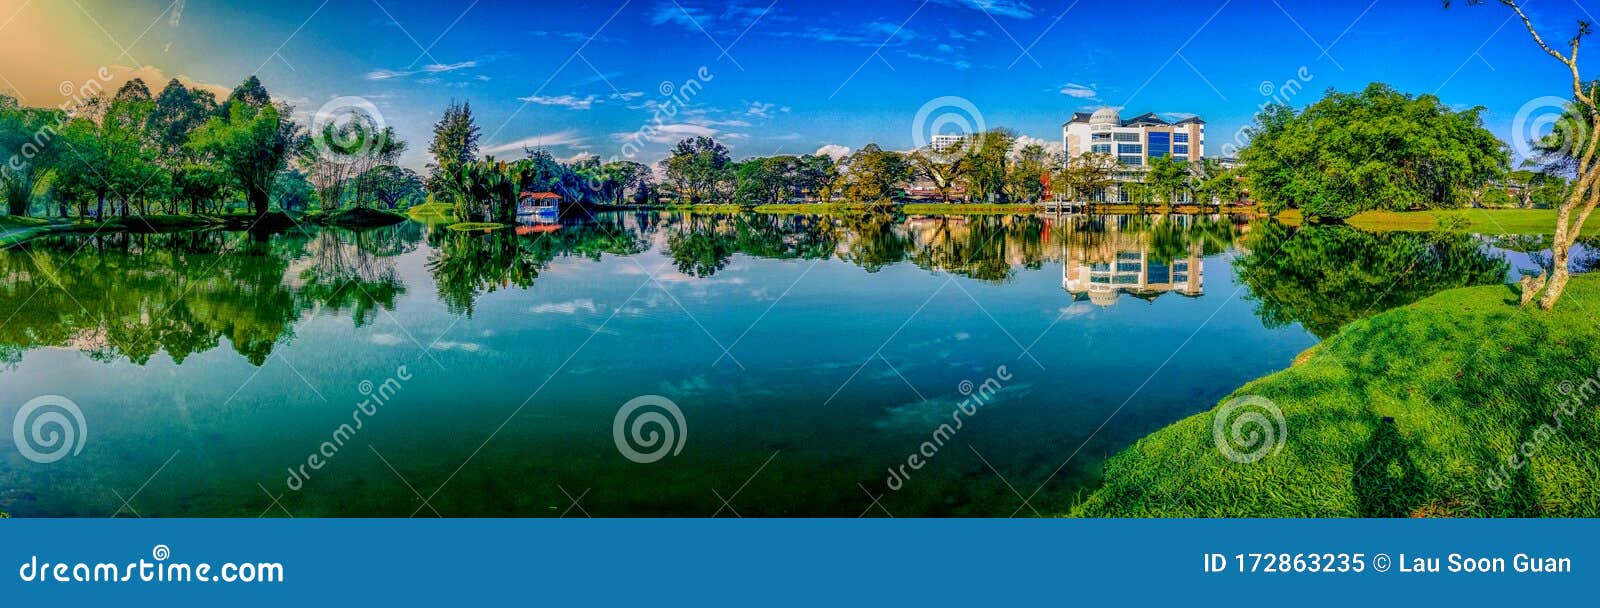 太平湖的美景库存图片 图片包括有晴朗 节假日 背包 公园 颜色 绿色 池塘 室外